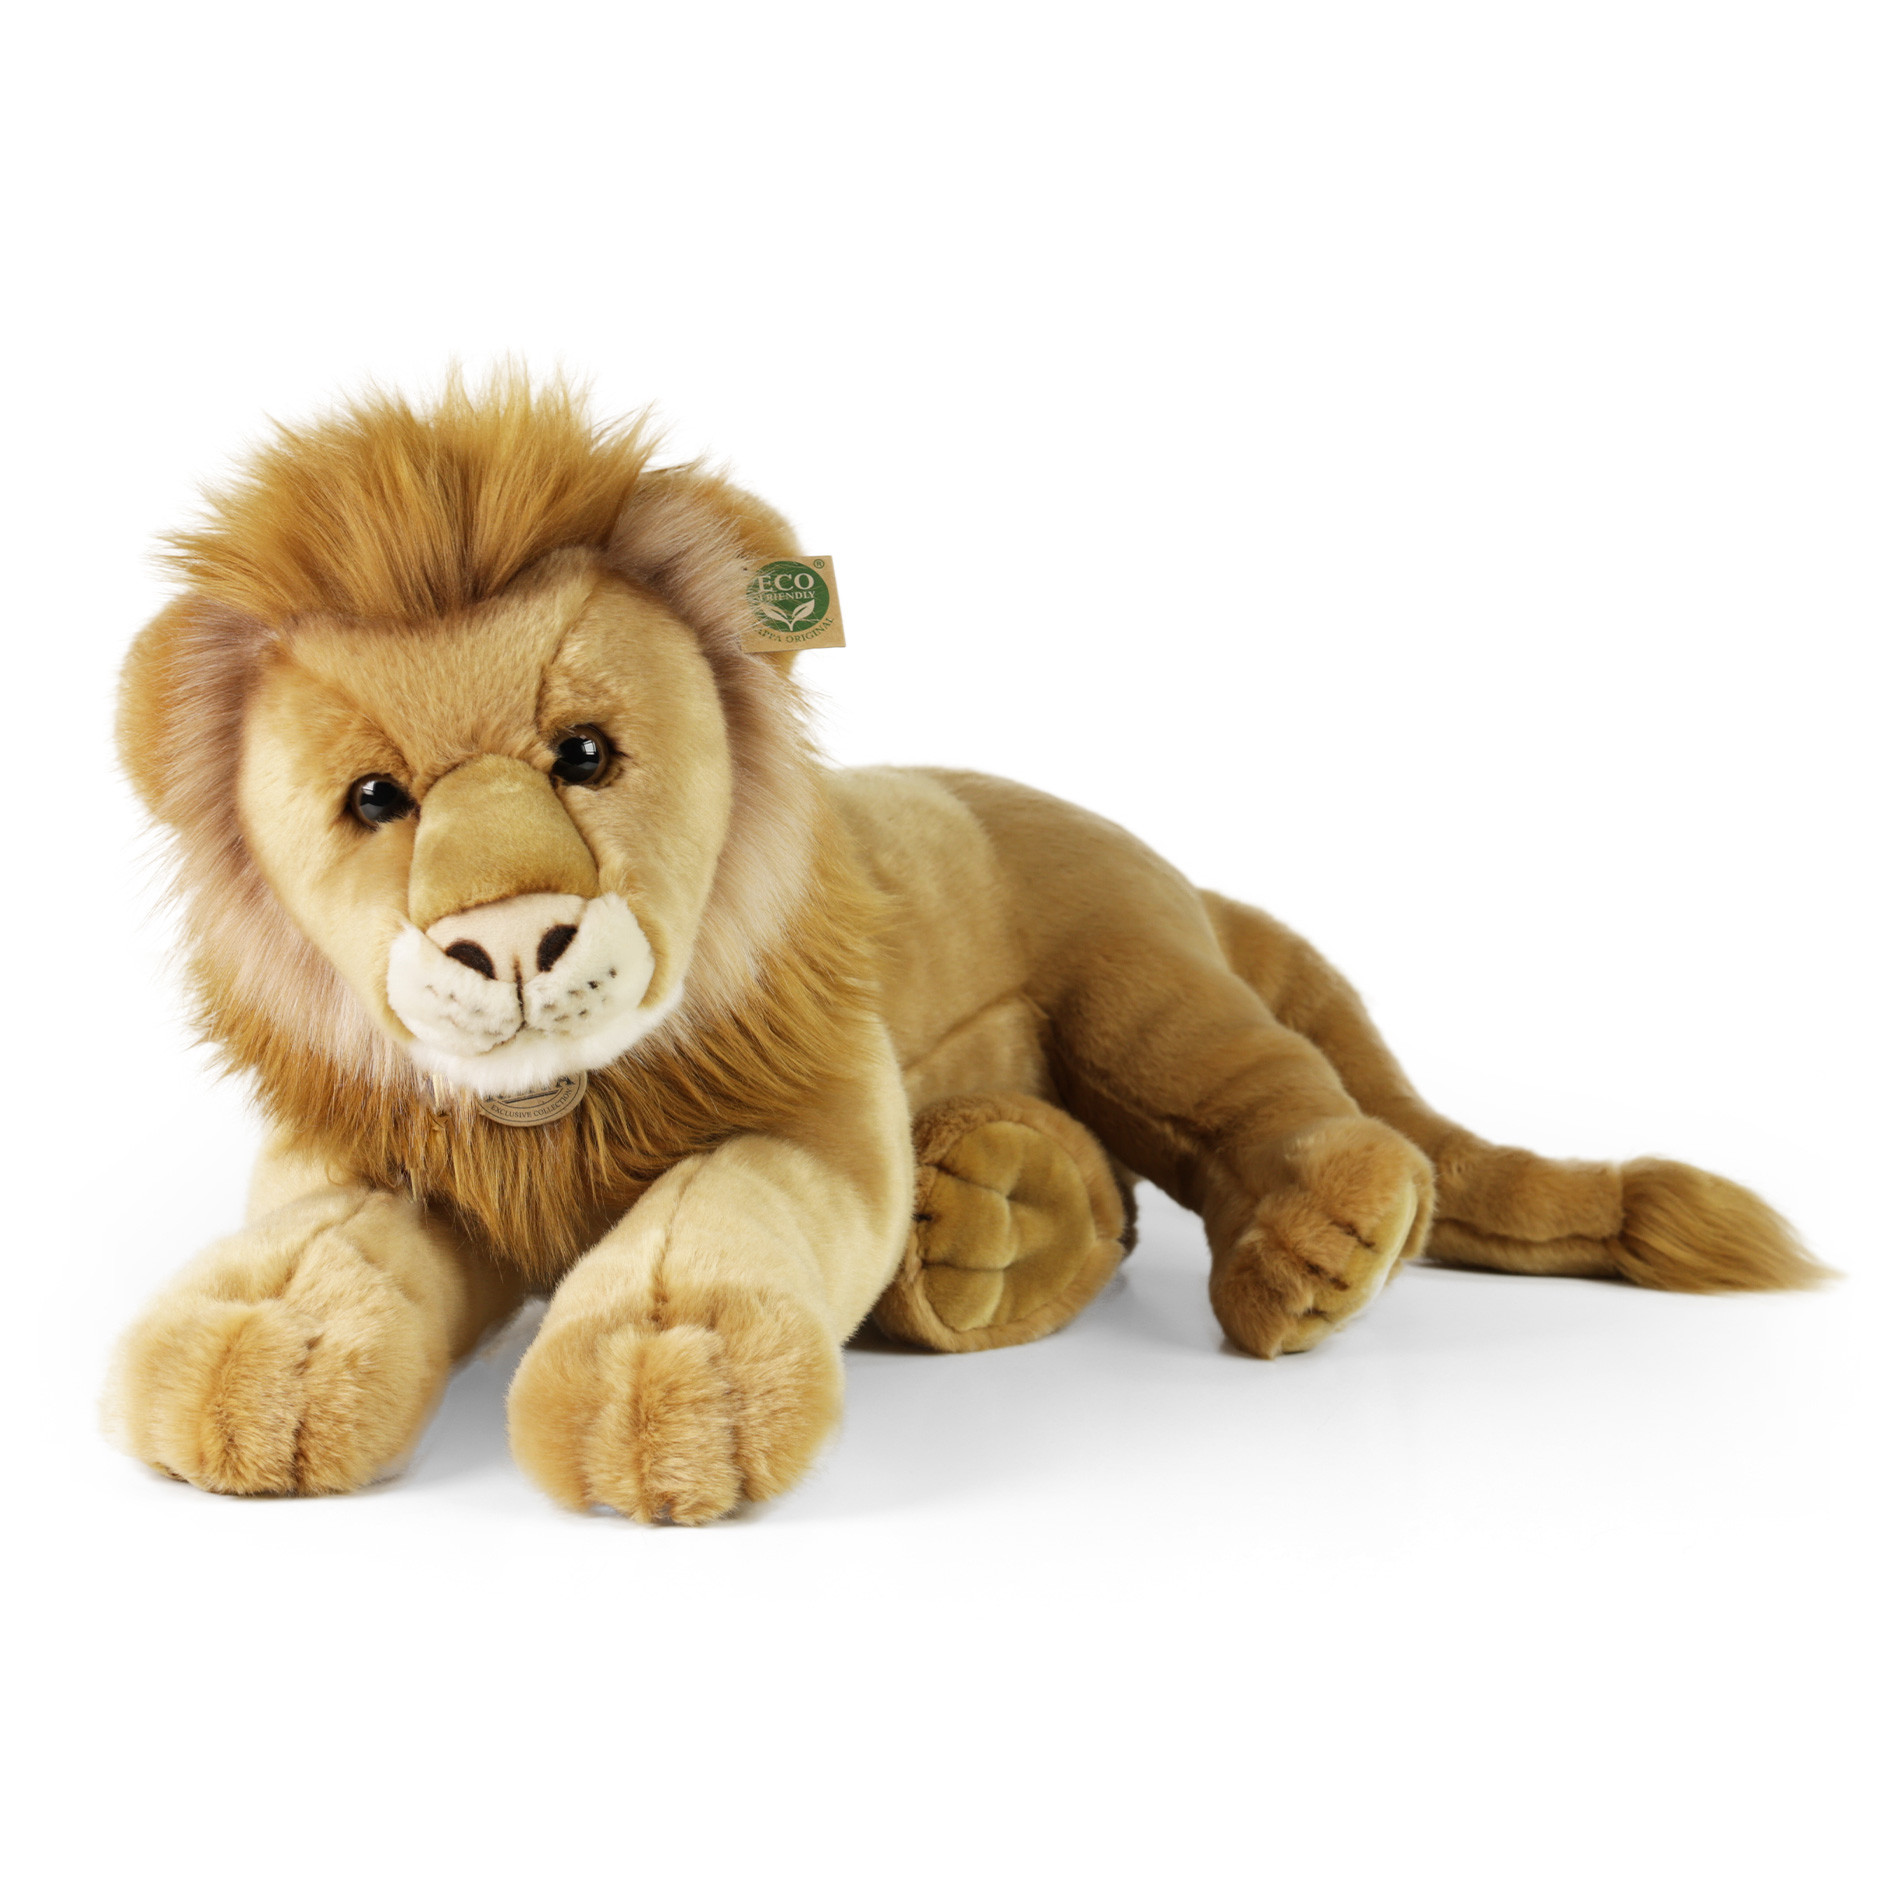 Plush lion 60 cm ECO-FRIENDLY